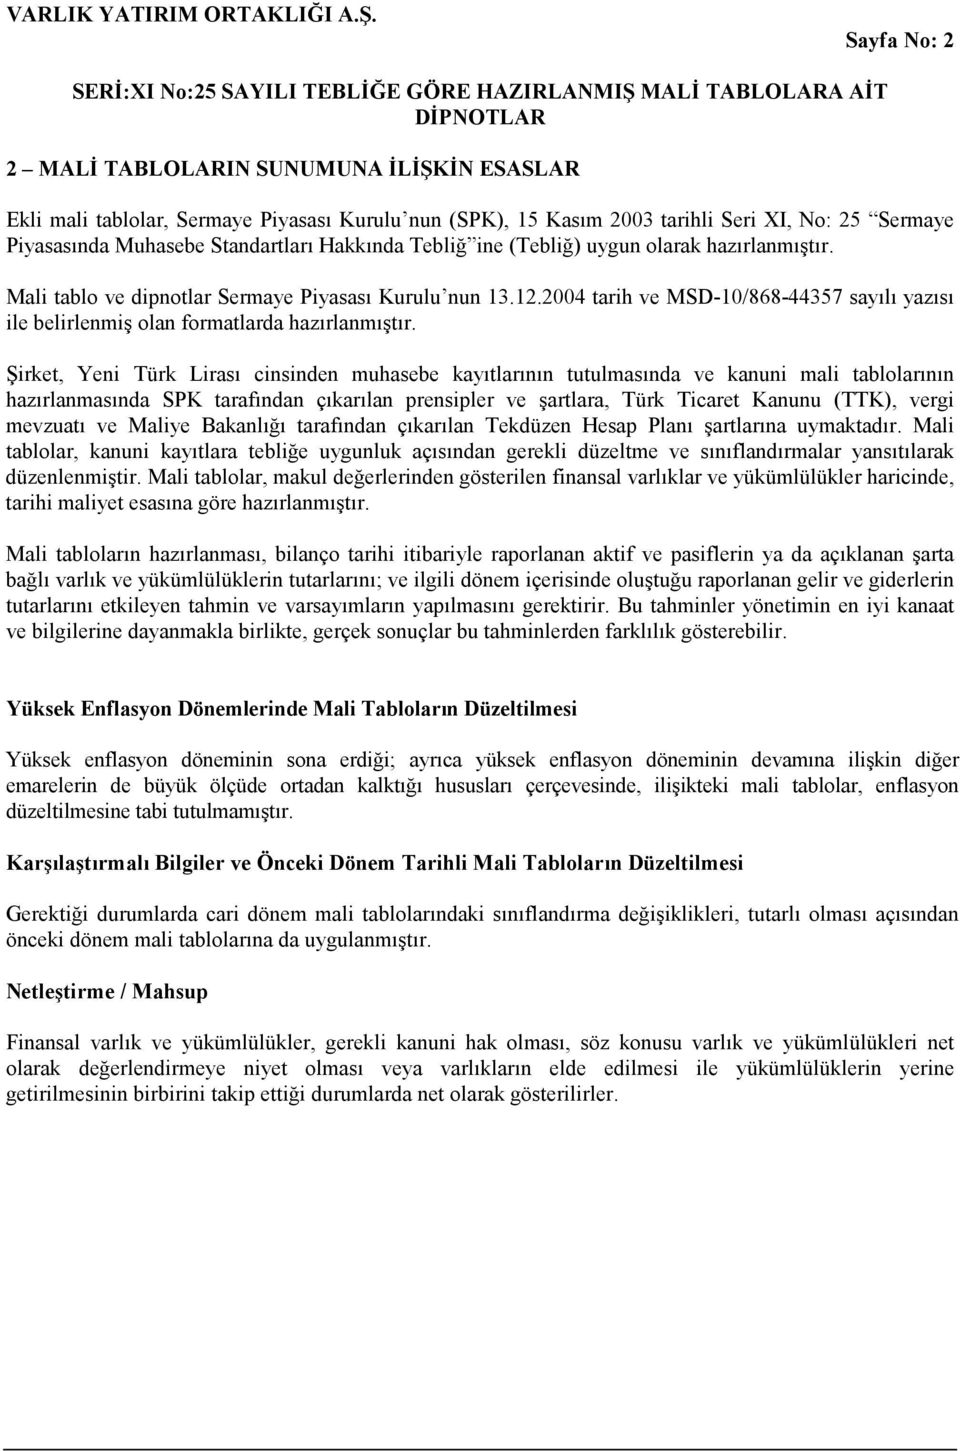 Şirket, Yeni Türk Lirası cinsinden muhasebe kayıtlarının tutulmasında ve kanuni mali tablolarının hazırlanmasında SPK tarafından çıkarılan prensipler ve şartlara, Türk Ticaret Kanunu (TTK), vergi